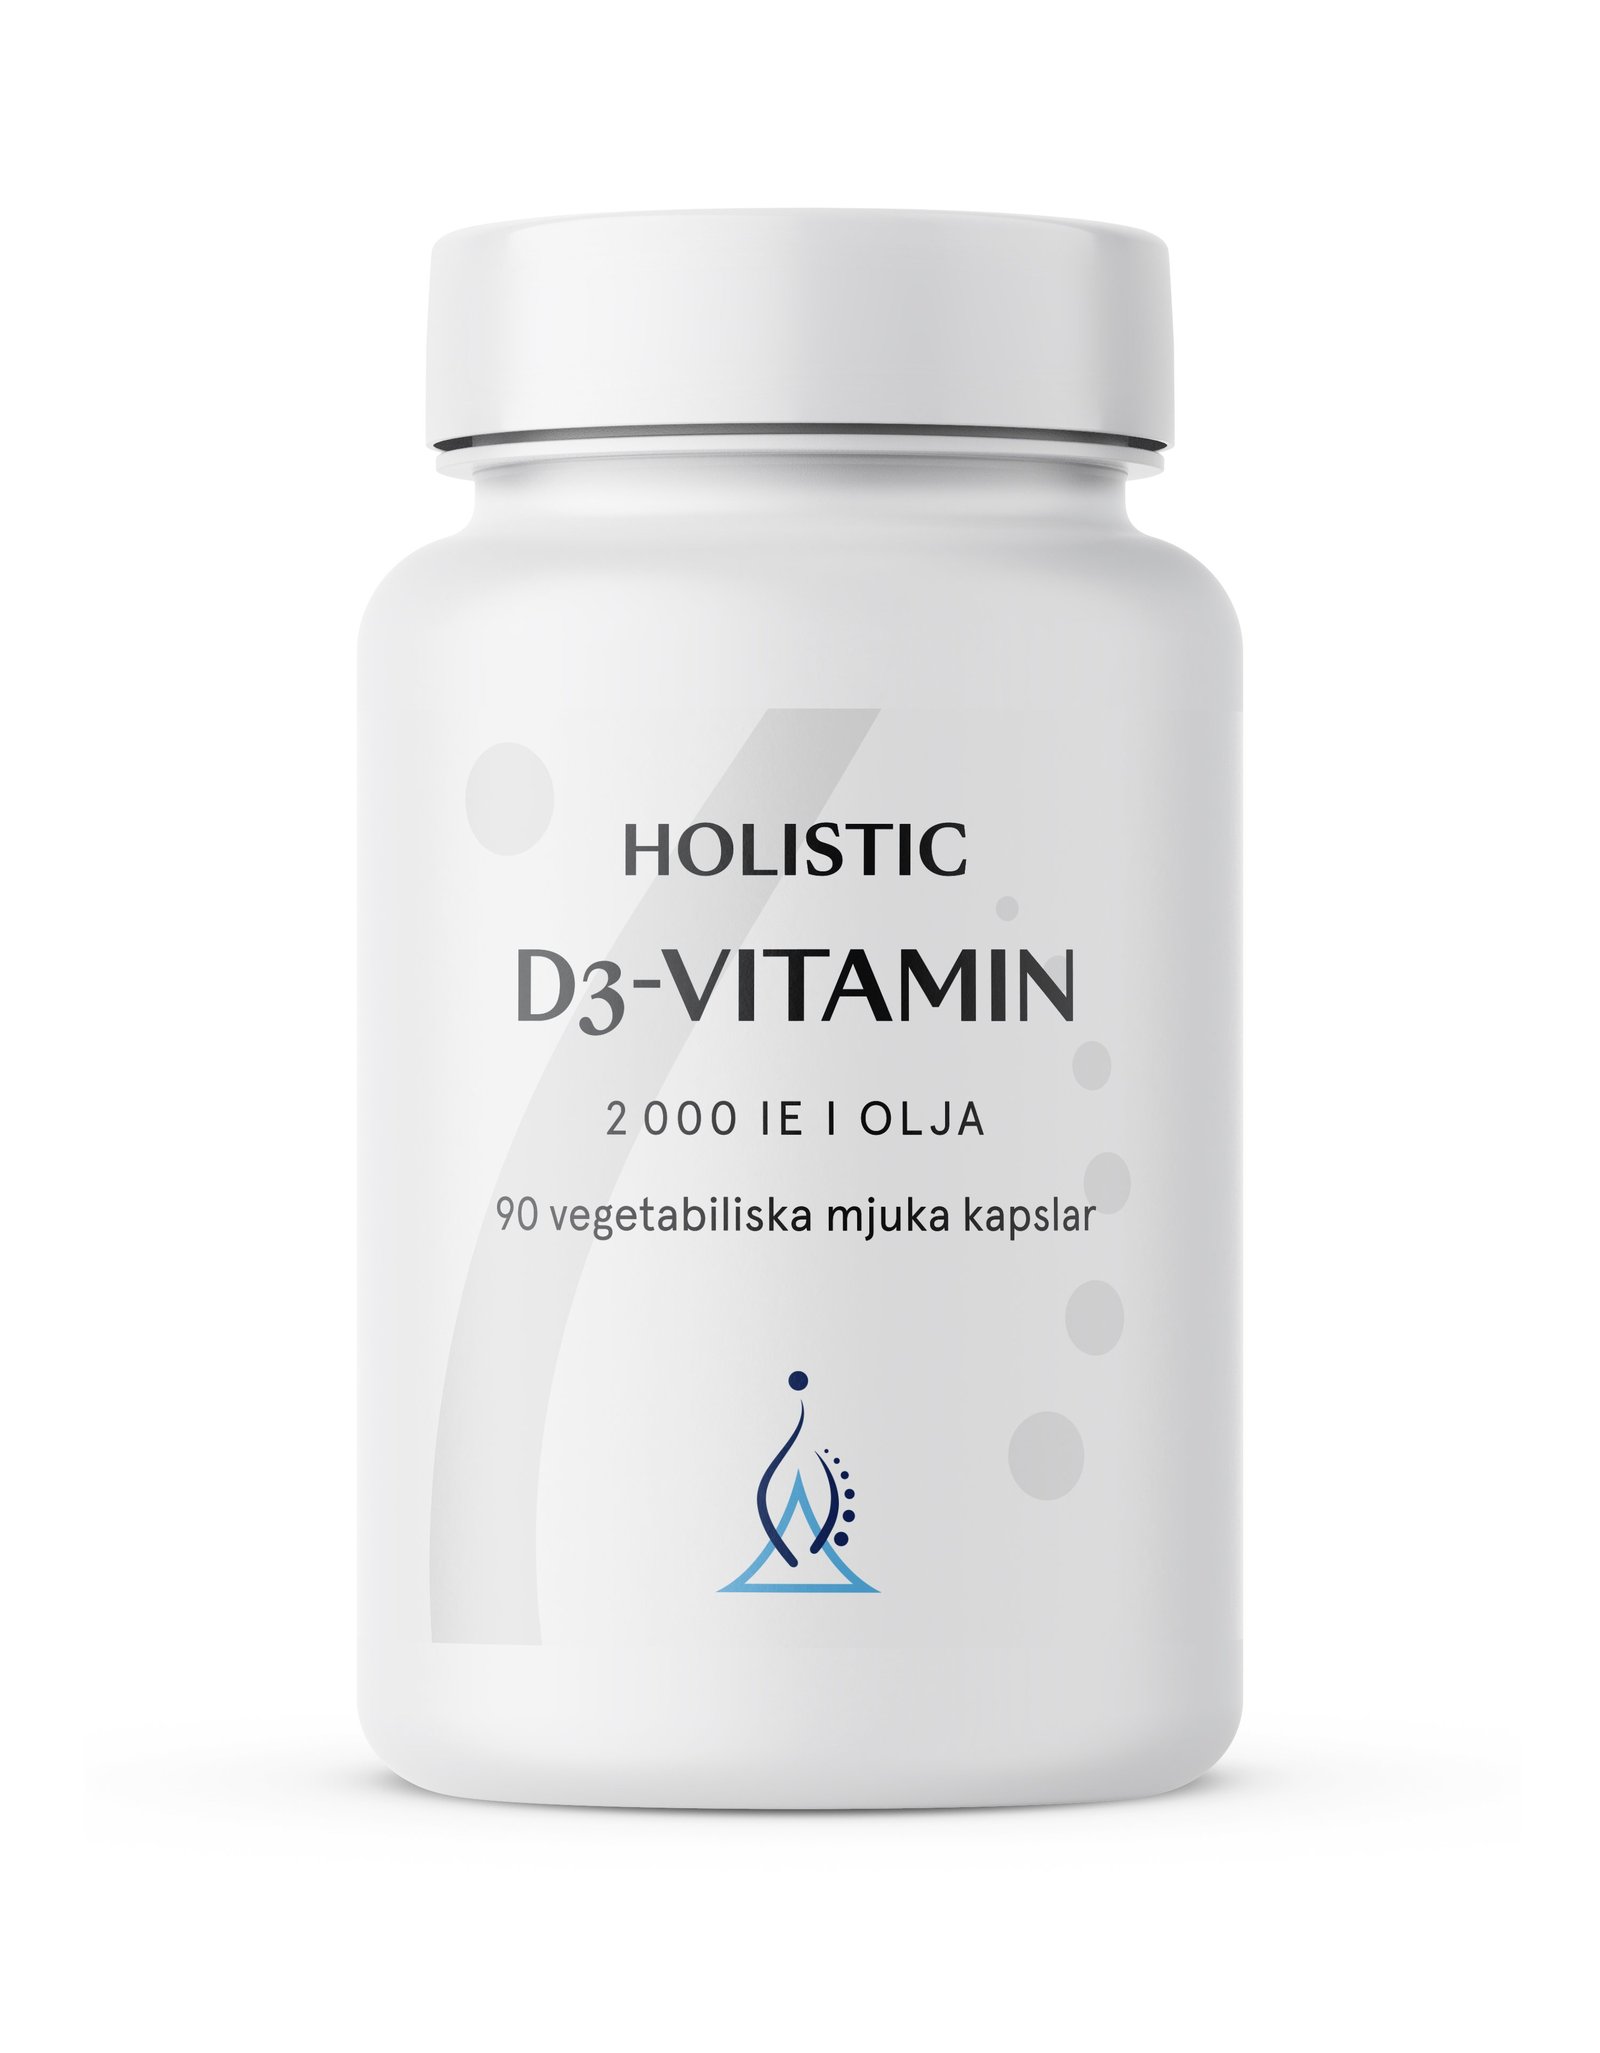 Holistic D3-vitamin 2000 IE (50 µg) i kokosolja 90 vegetabiliska kapslar